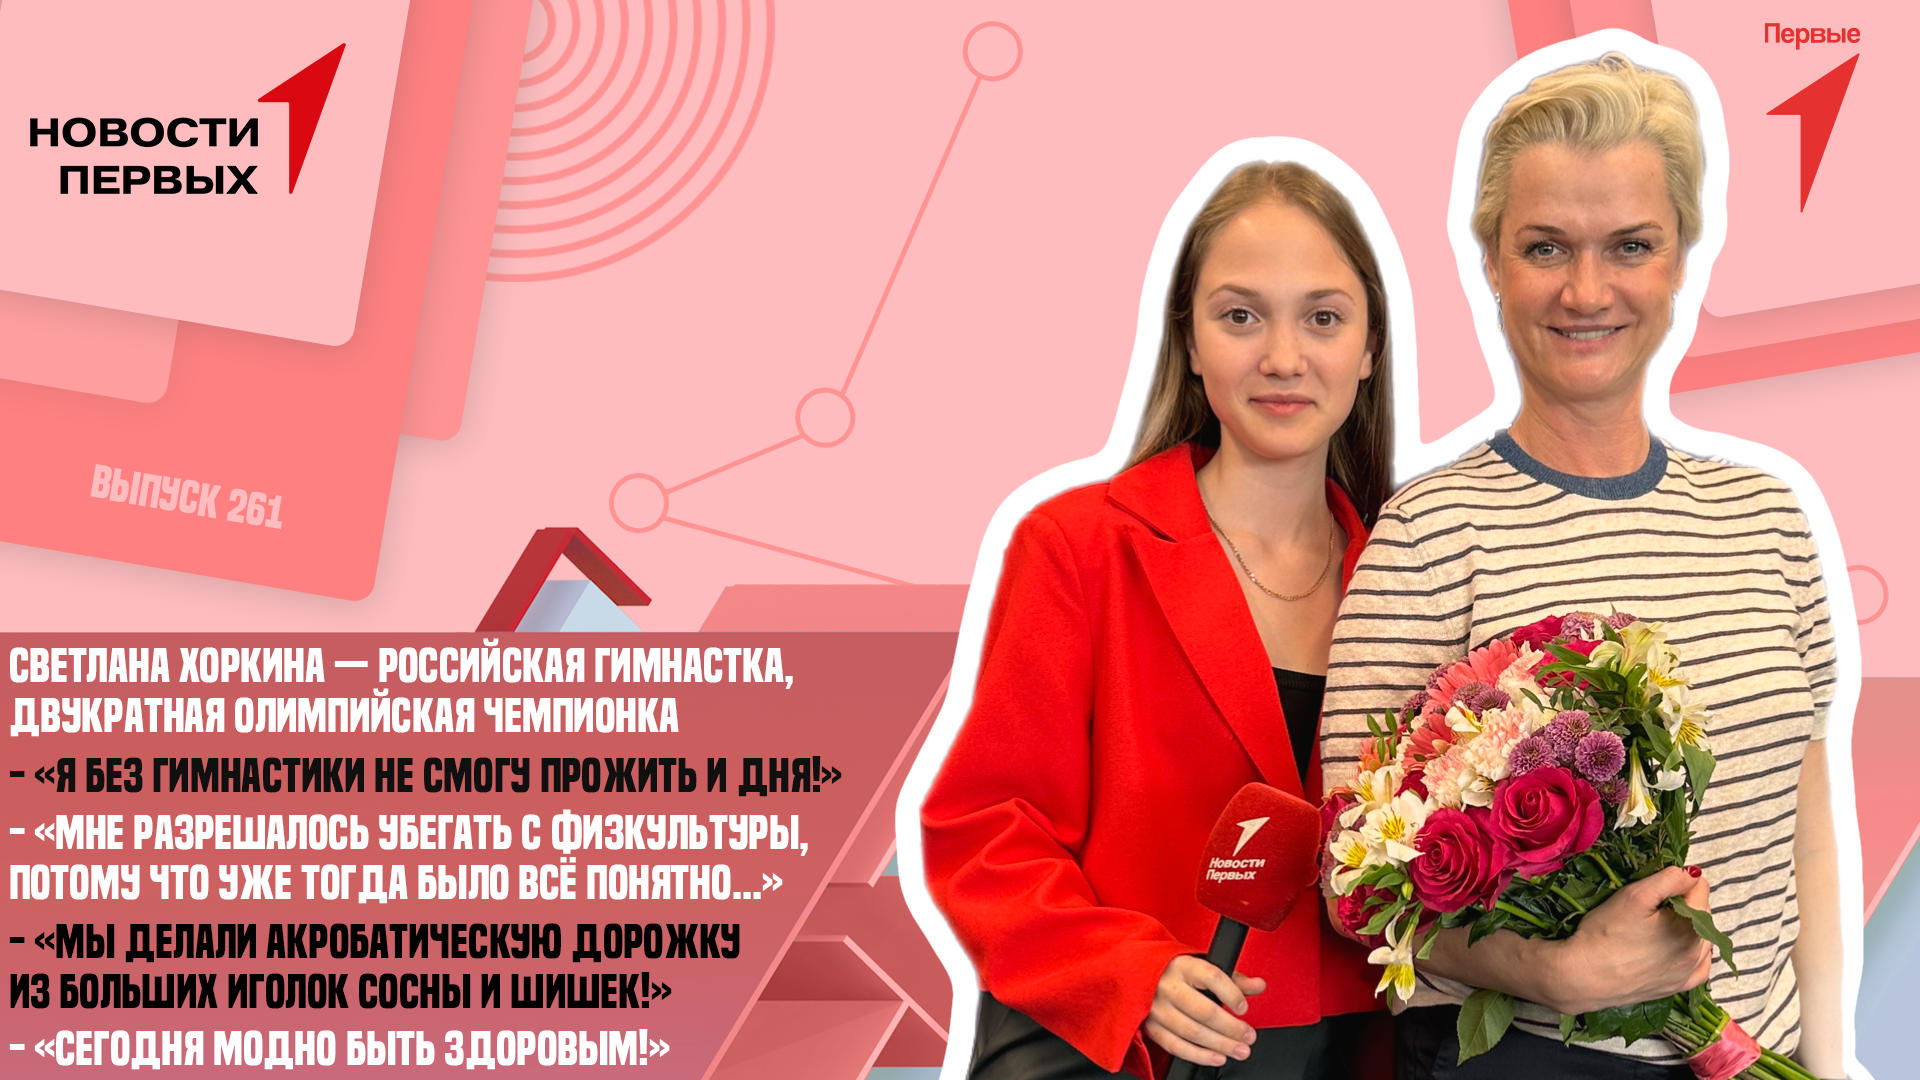 Светлана Хоркина — российская гимнастка, двукратная олимпийская чемпионка в упражнениях на брусьях